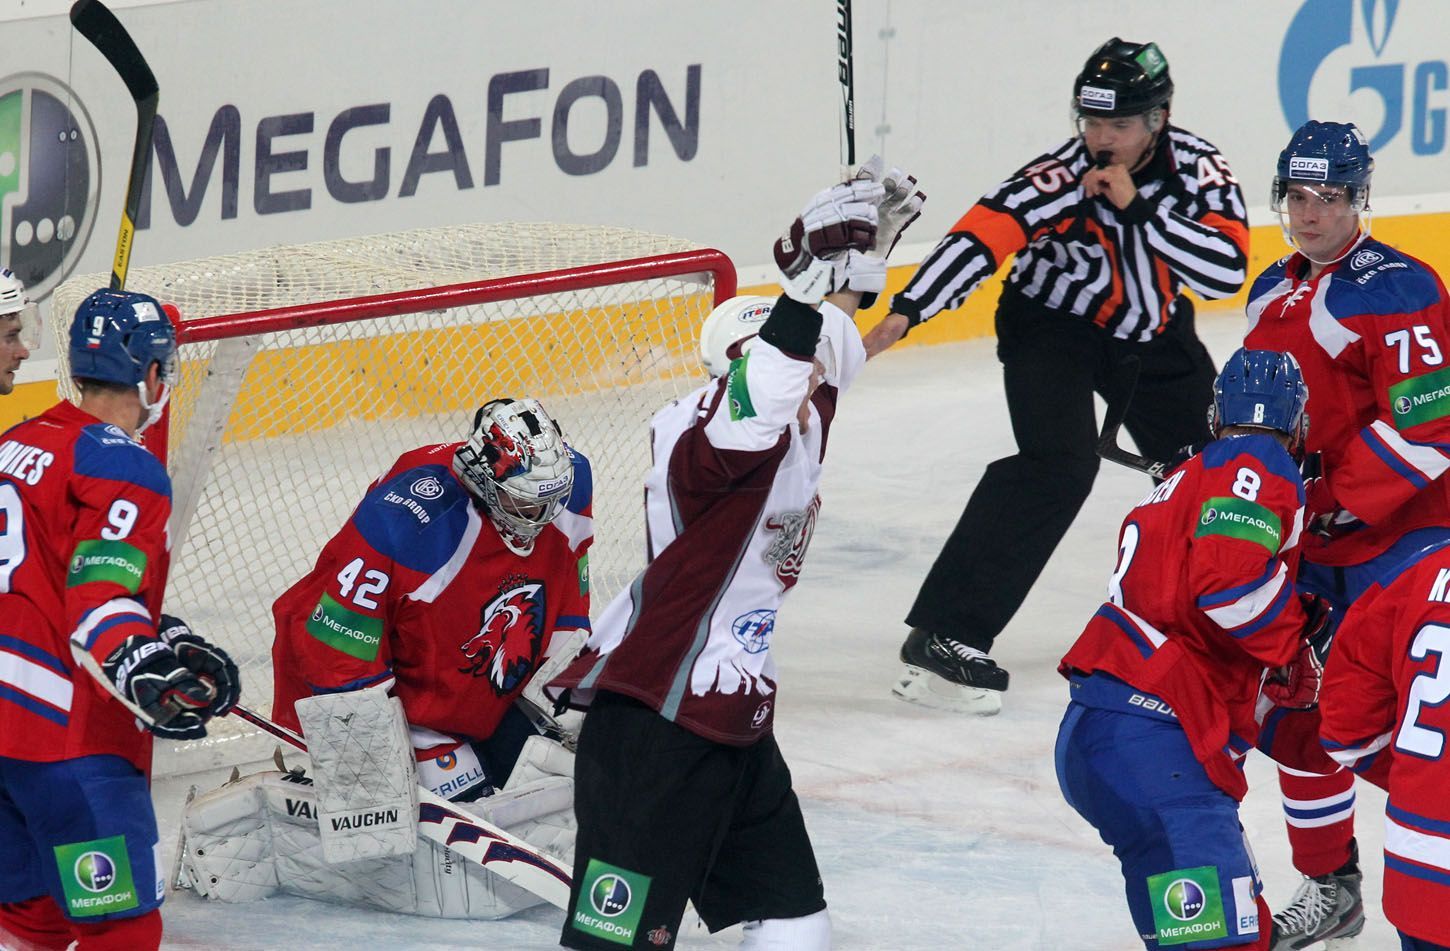 Hokejista Martins Karsums slaví gól a přihlížejí (zleva) Jiří Hunkes, Tomáš Pöpperle, Michal Sersen a Vitalij Karamnov v utkání KHL 2012/13 mezi Lvem Praha s Dinamem Riga.